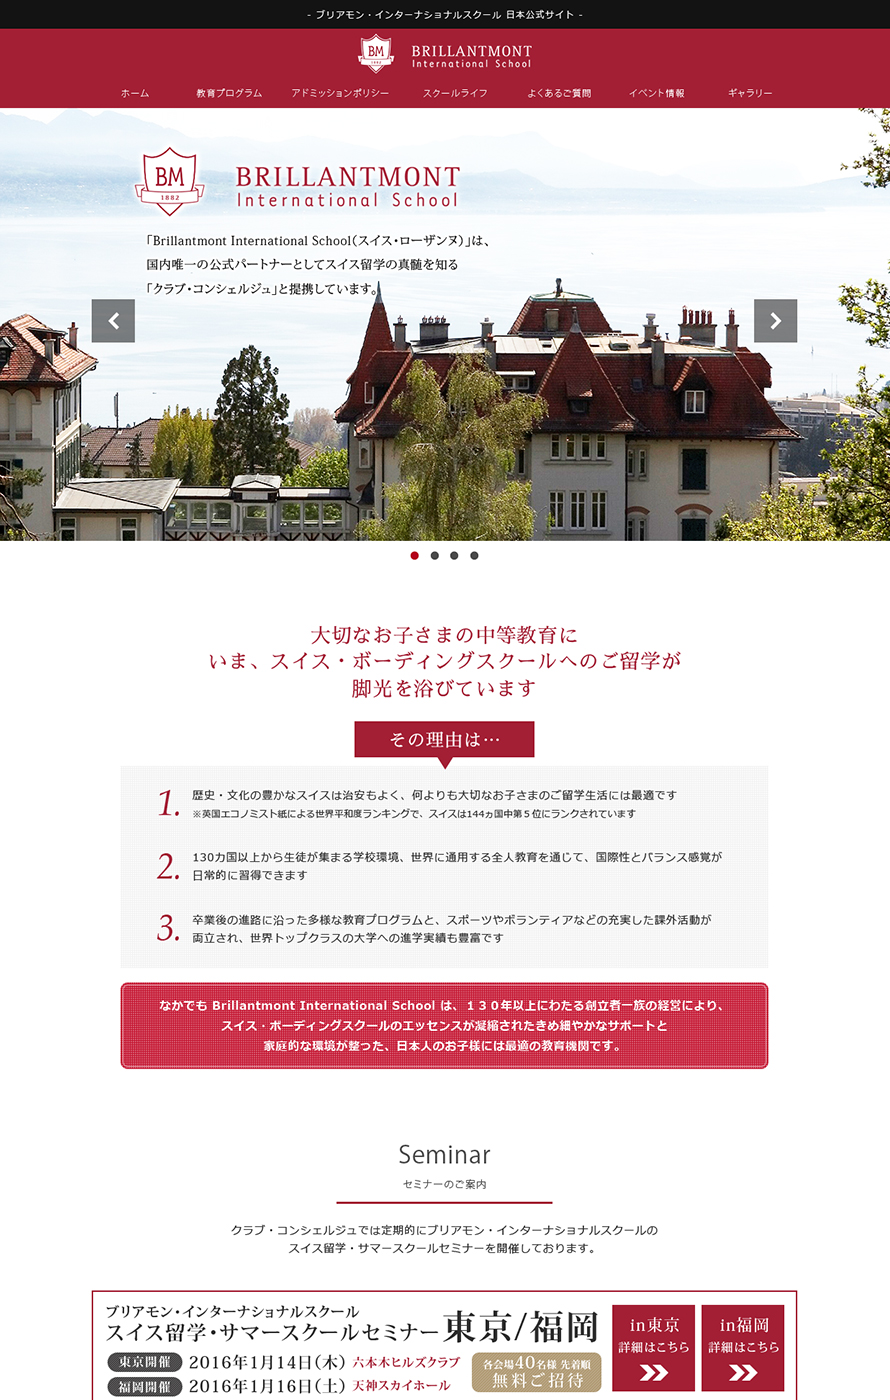 ブリアモン・インターナショナルスクール 日本公式サイト ウェブ制作実績